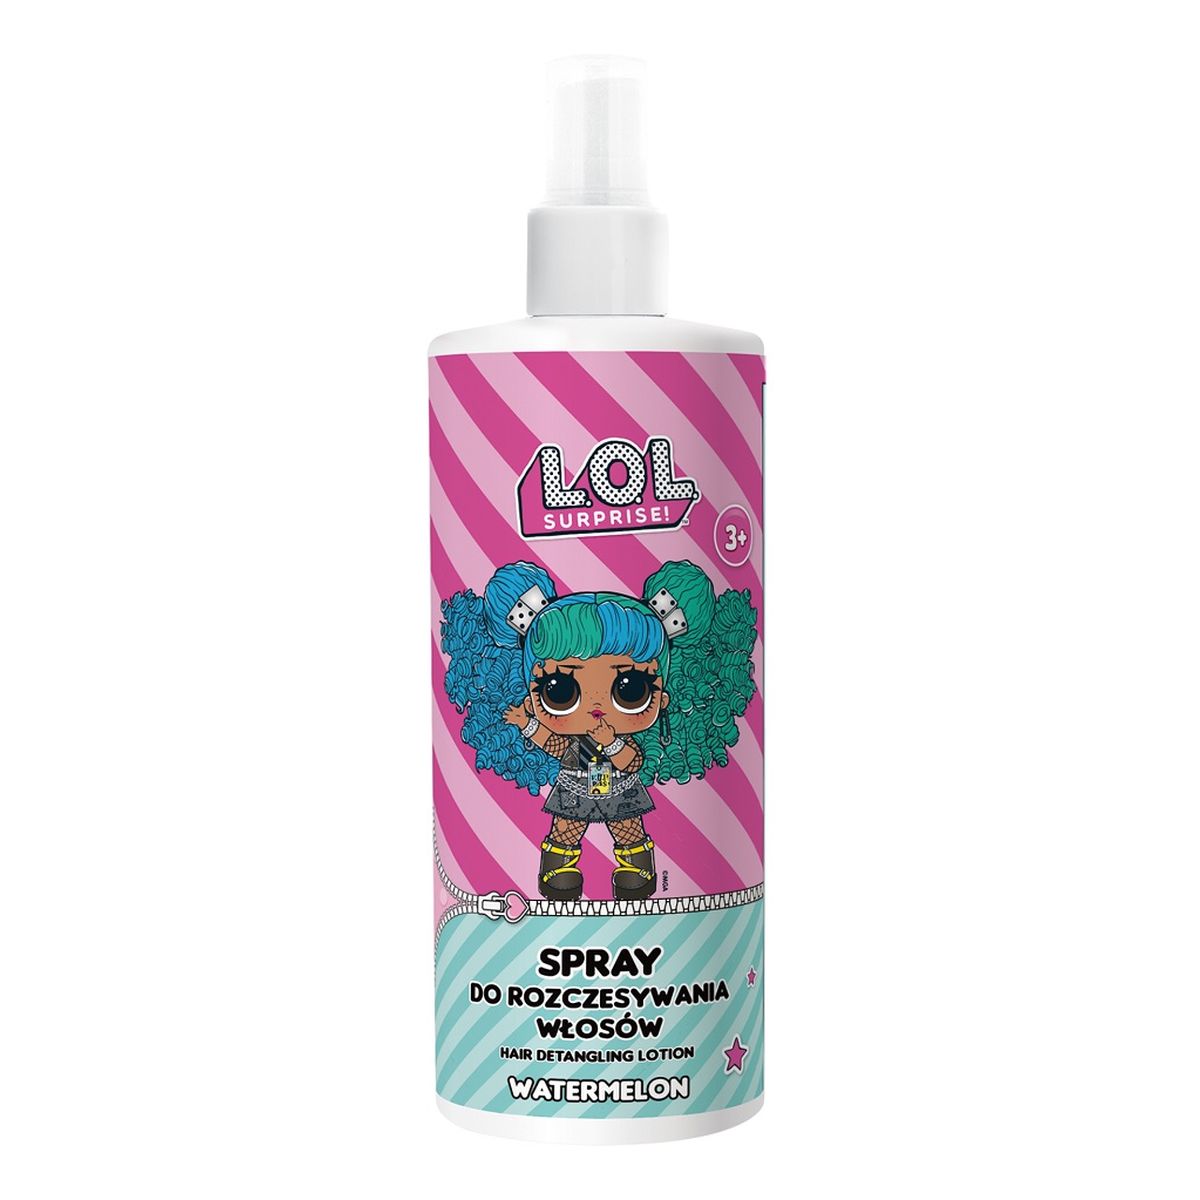 Lol Surprise Hair detangling lotion 3+ spray do rozczesywania włosów watermelon 200ml